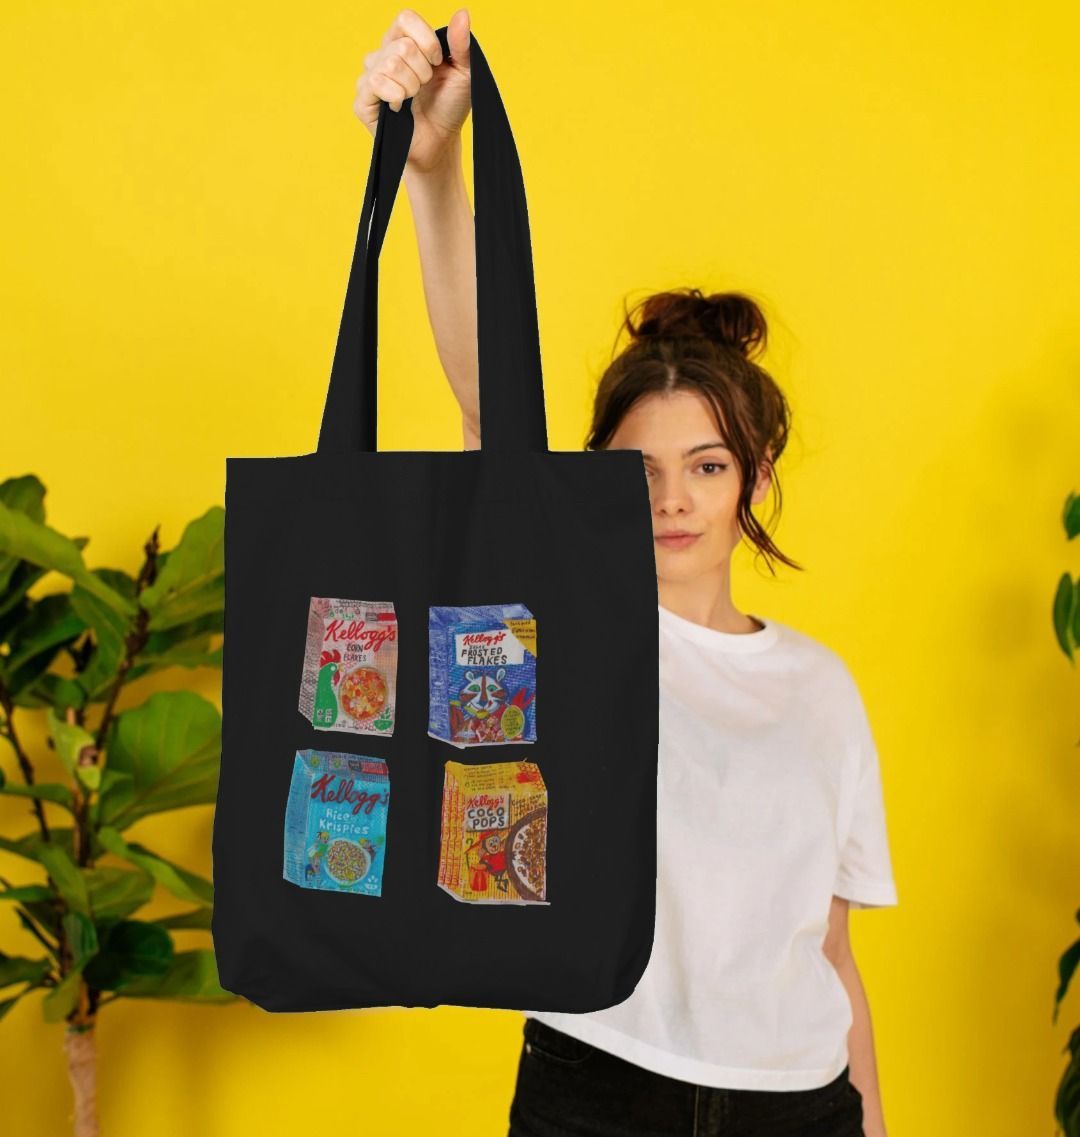 breakfast buddies organic tote bag - Printed Bag - Sarah Millin